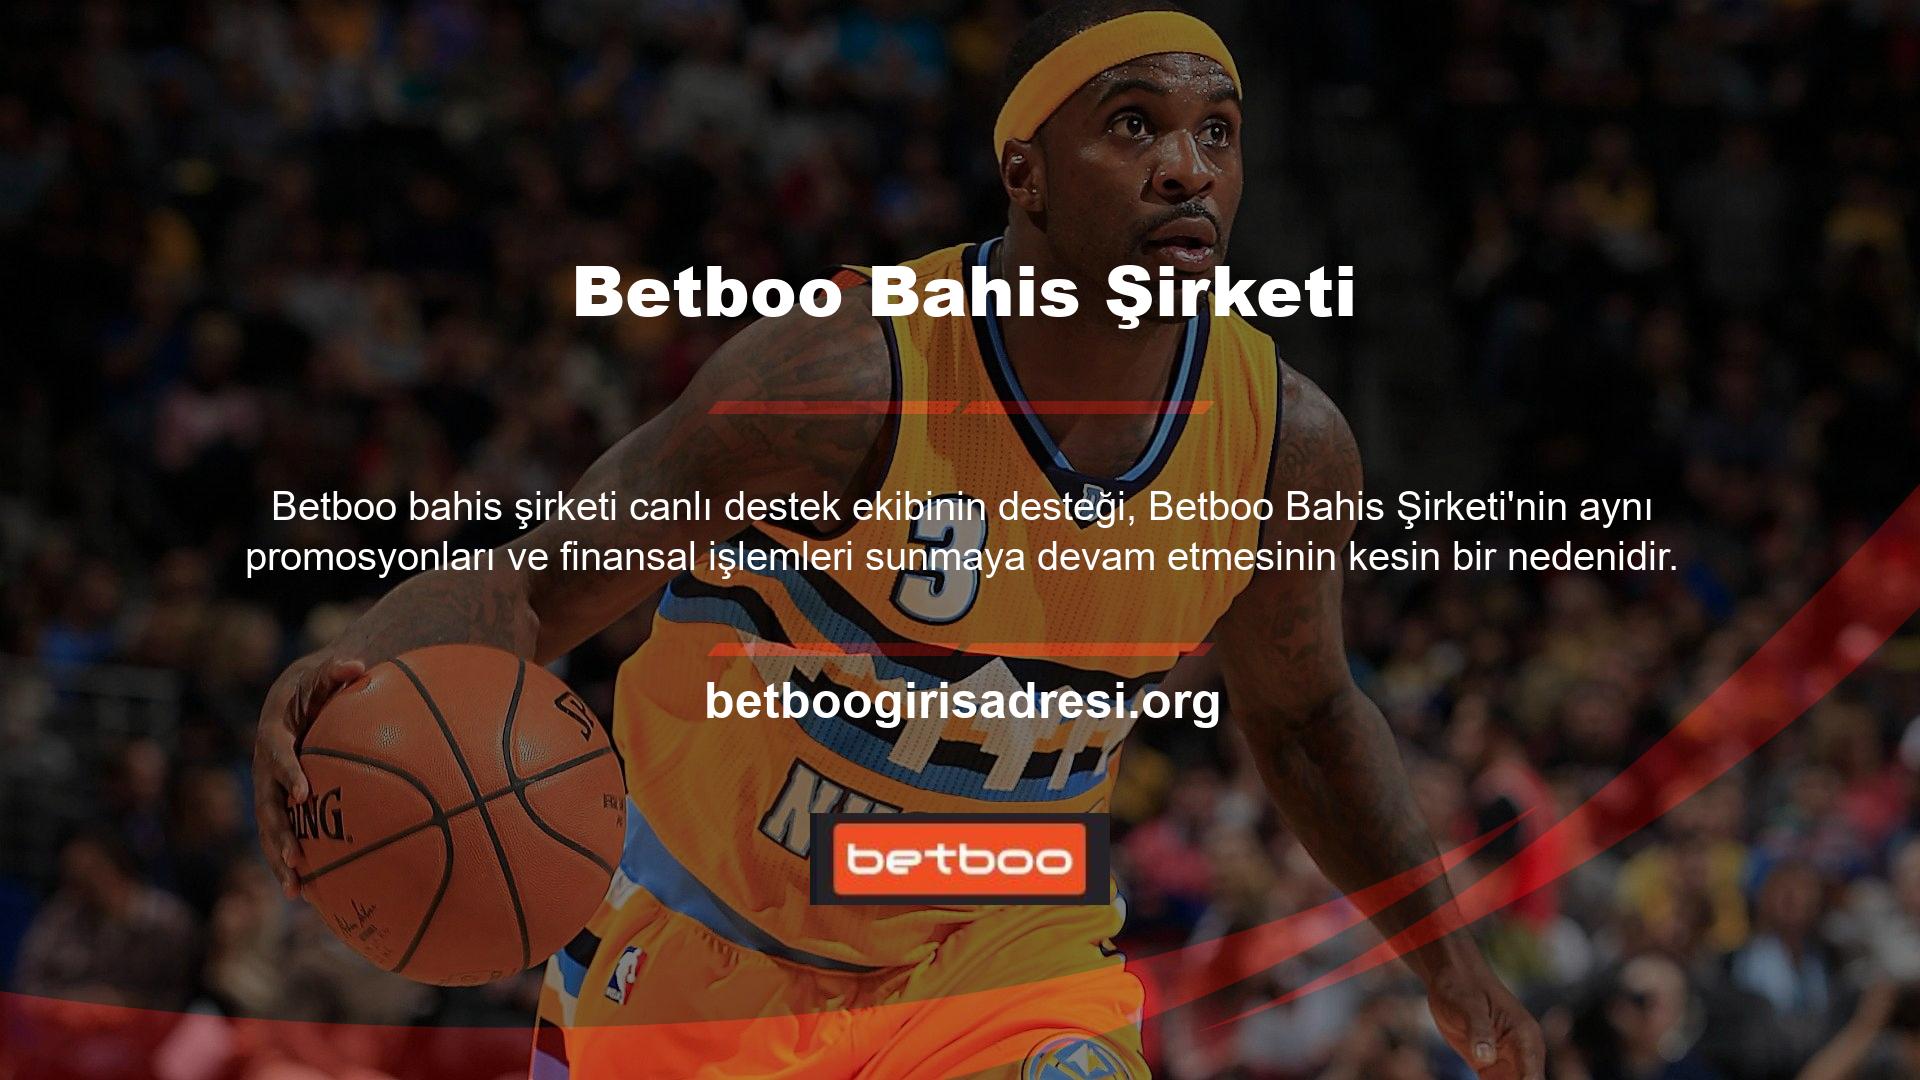 Betboo web sitesi hakkında daha fazla bilgi edinmek için hakkımızda kısmına gidebilirsiniz